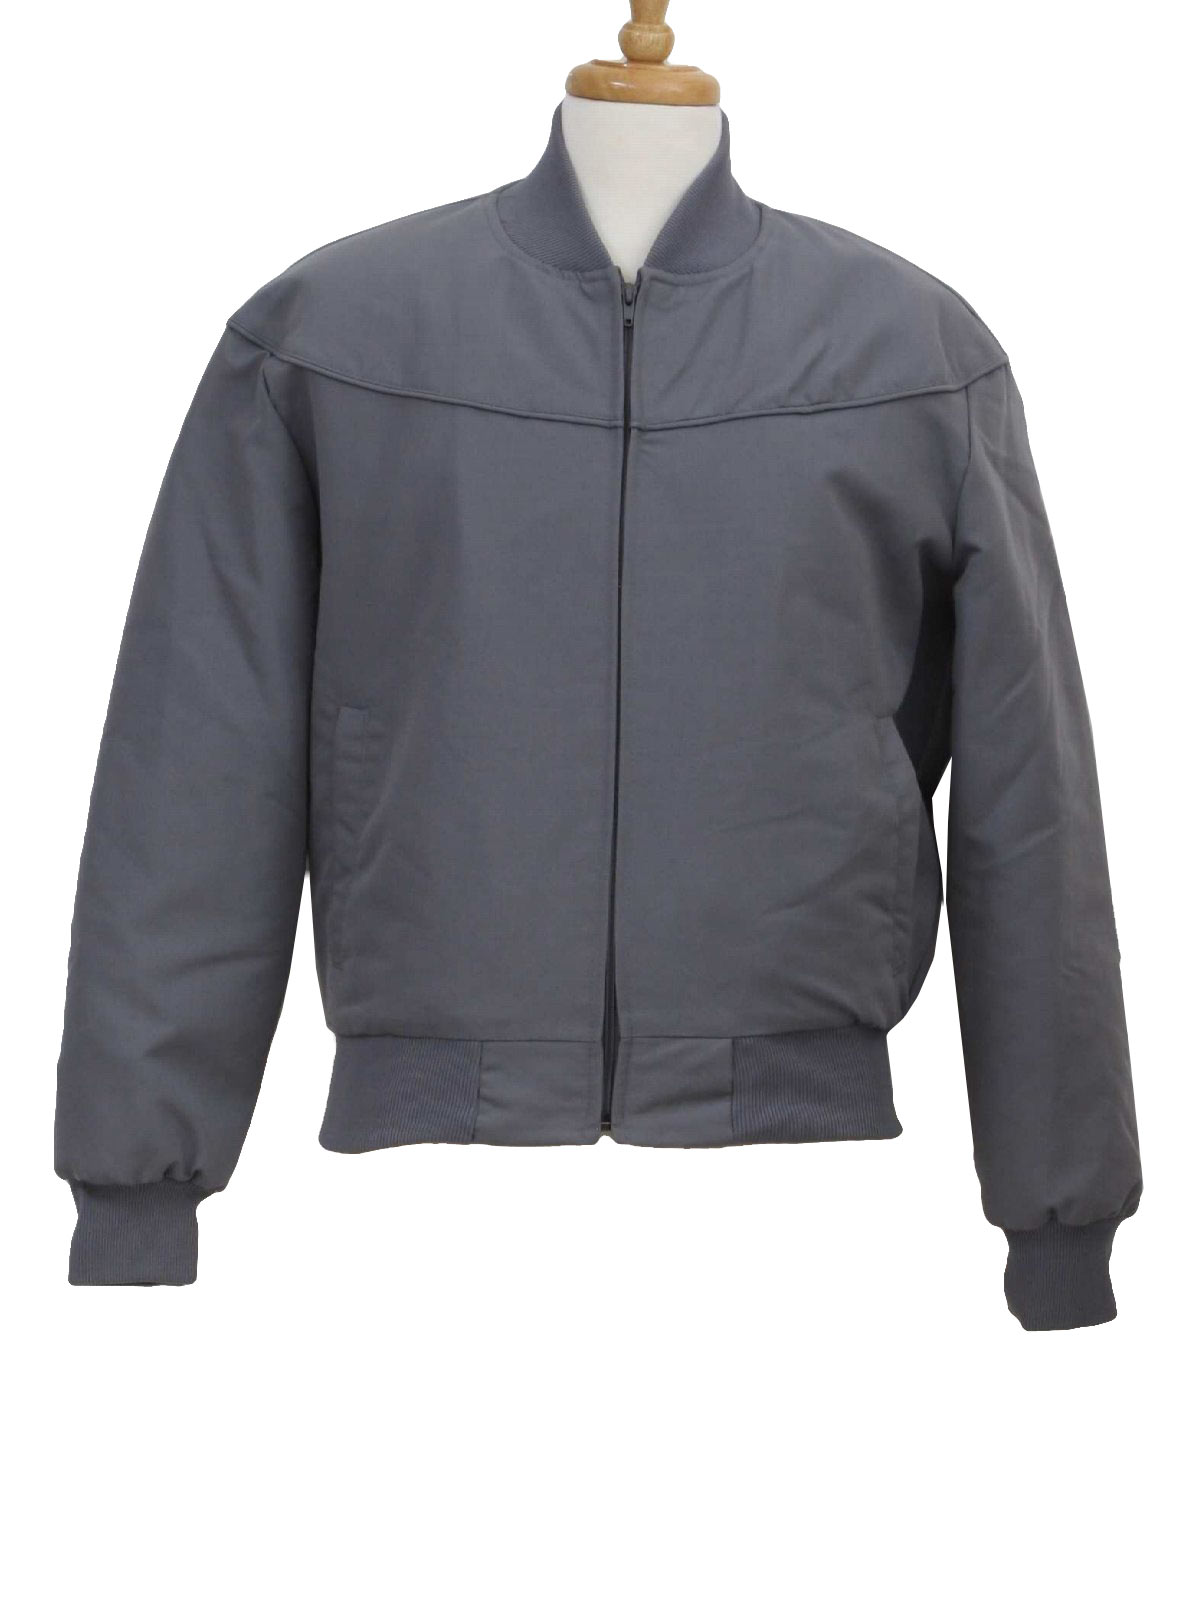 Retro 80's Jacket: 80s -MacMurray of California- Mens gray polyester ...